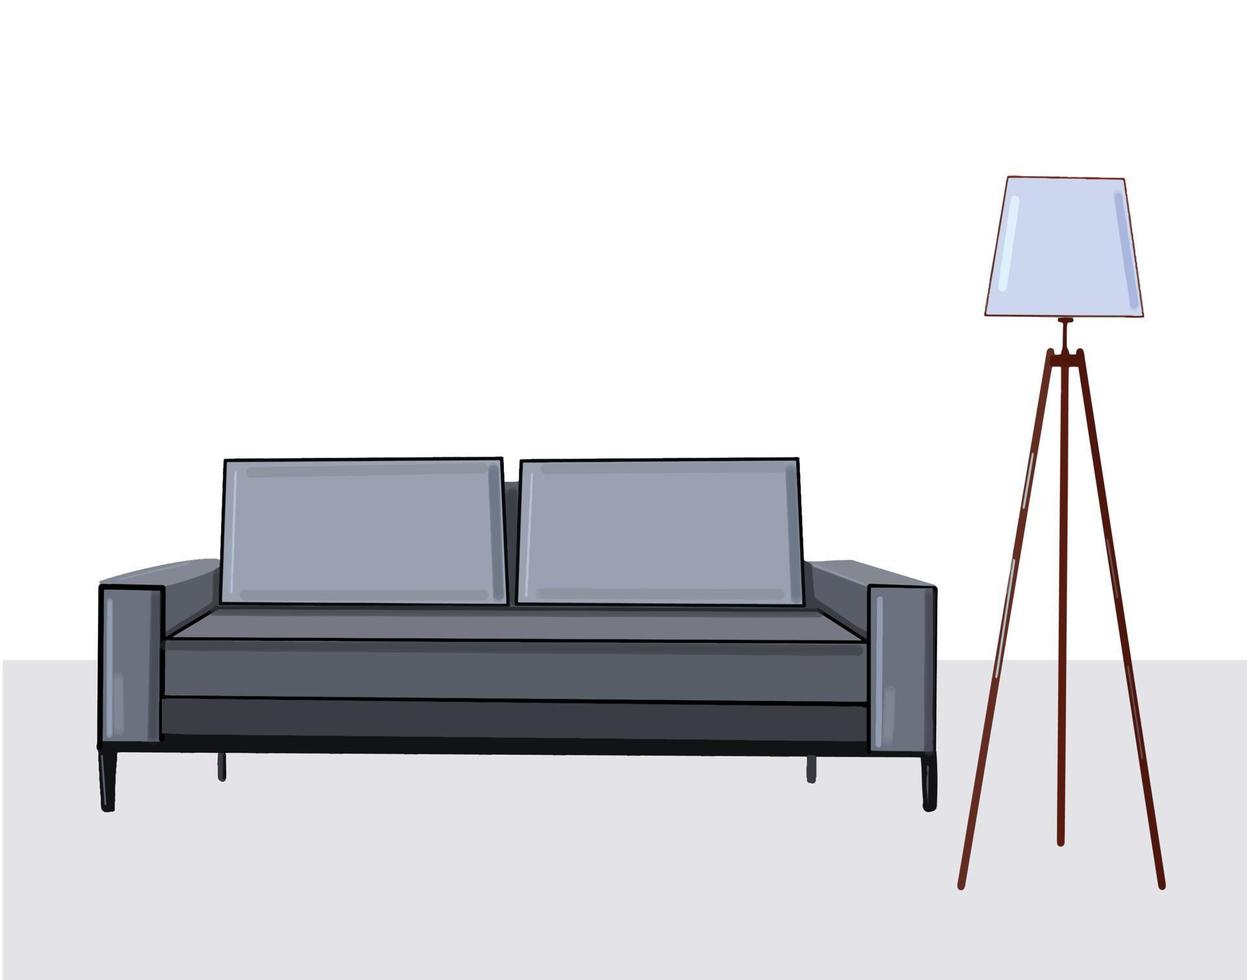 quarto com sofá cinza e luminária de chão, ilustração vetorial de design de interiores moderno vetor